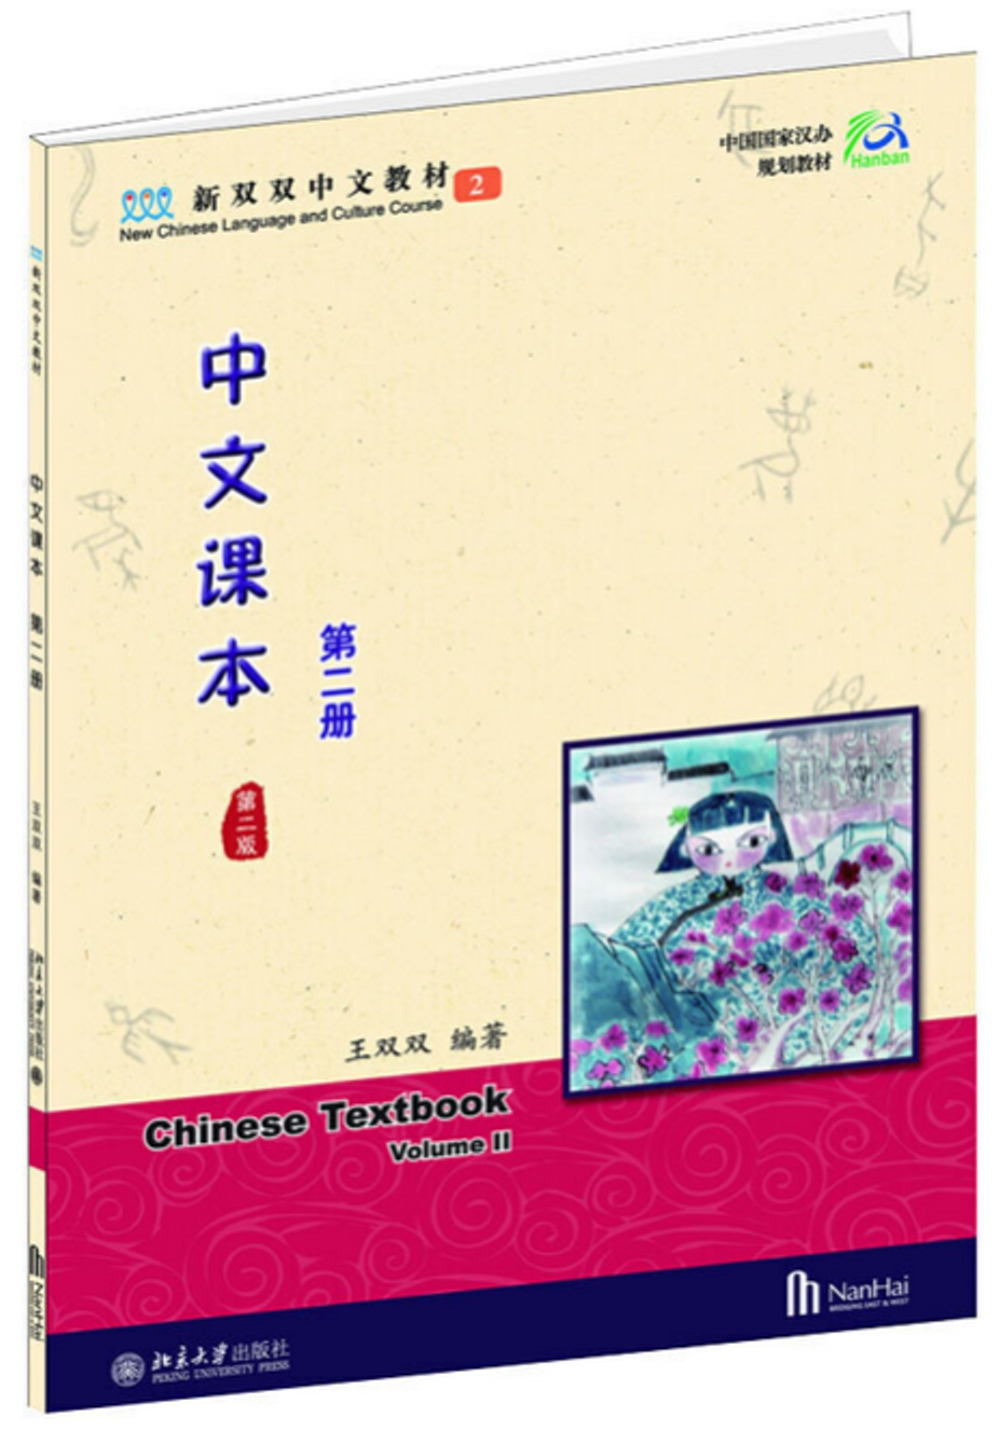 中文課本(第二册 第二版)